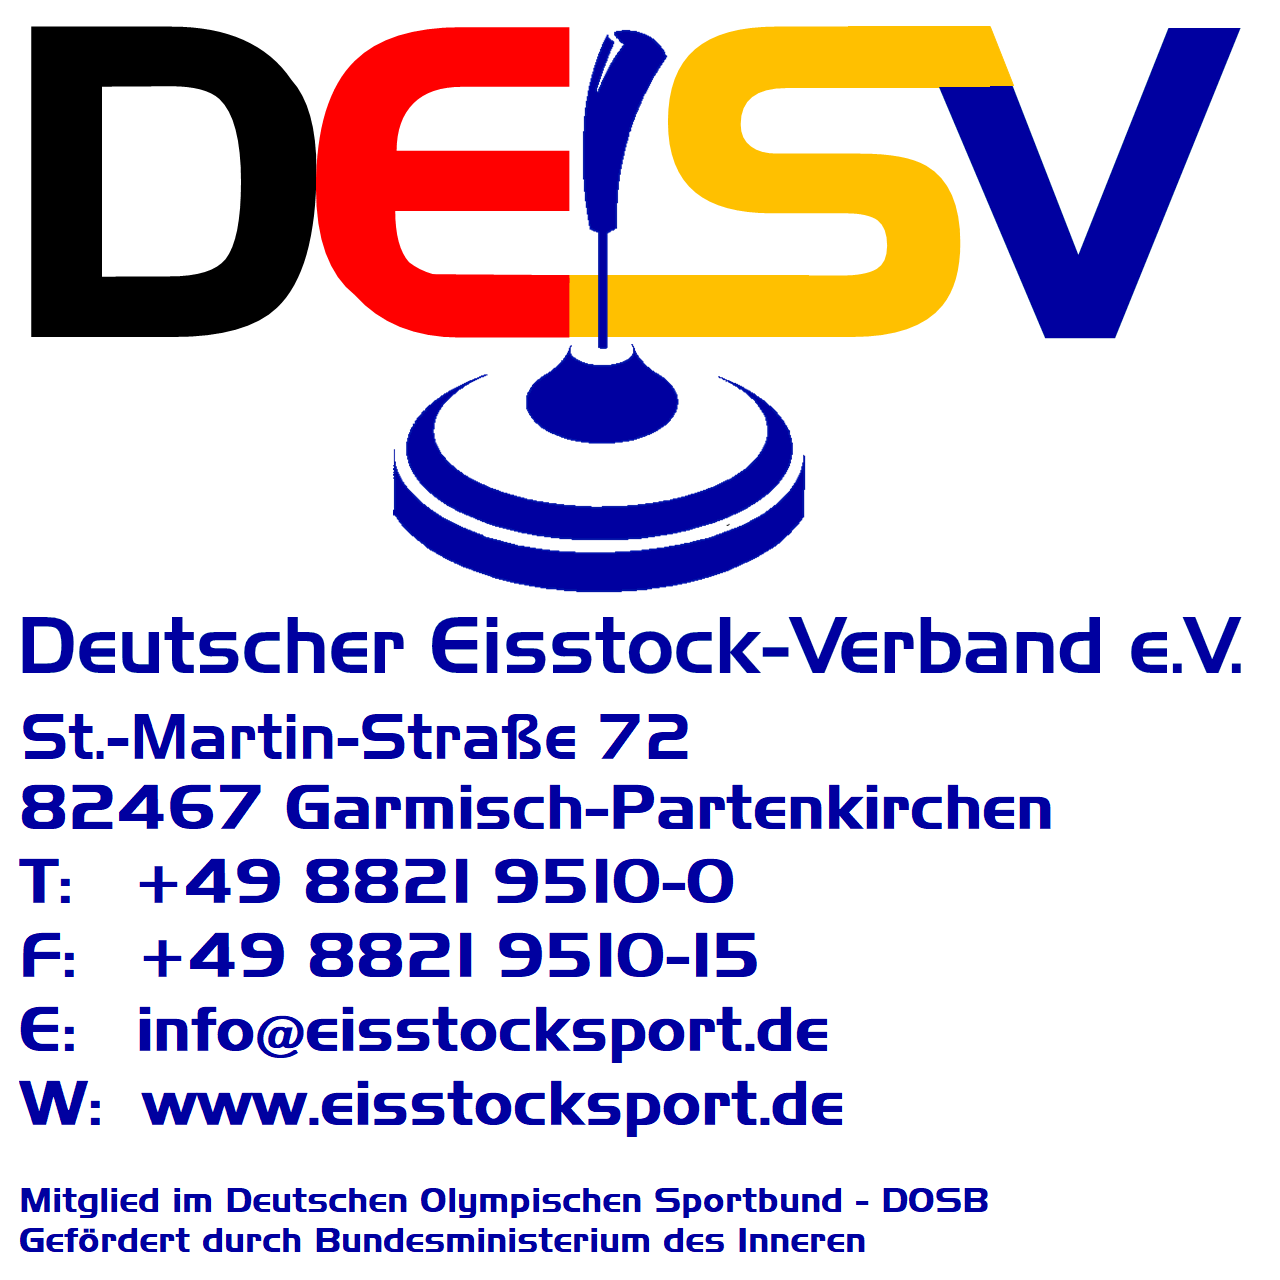 www.eisstocksport.de